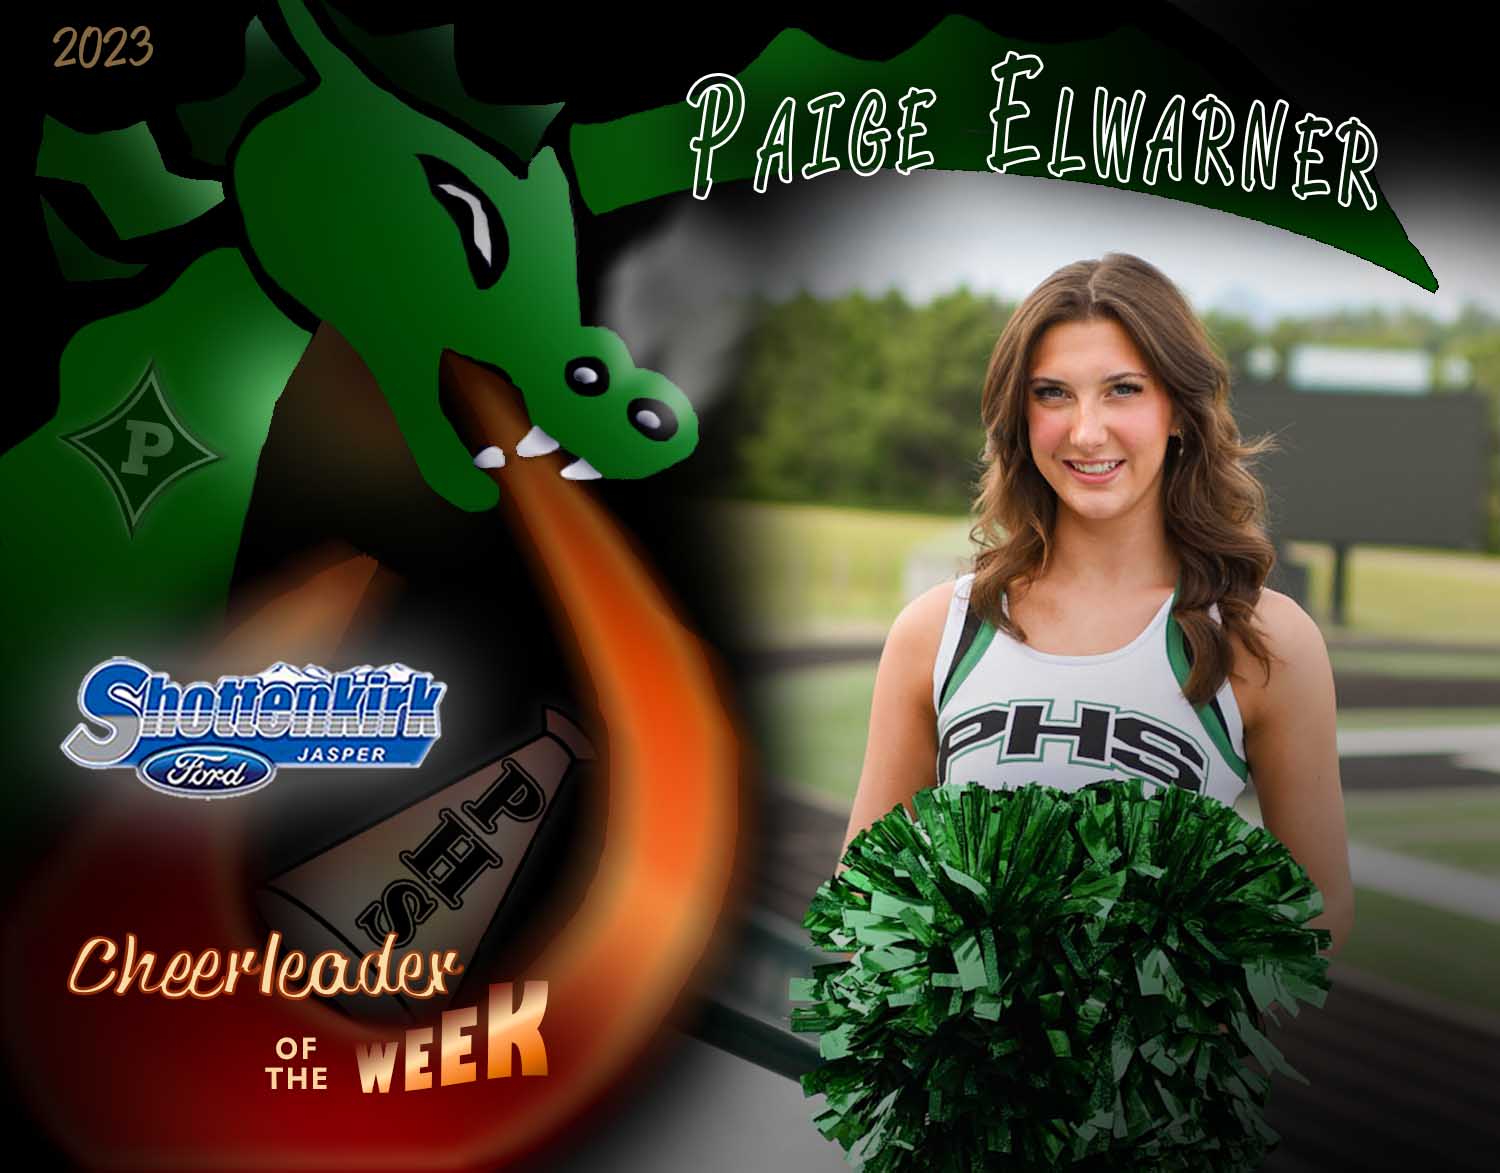 PHS Cheerleader of the Week #2 - Paige Elwarner